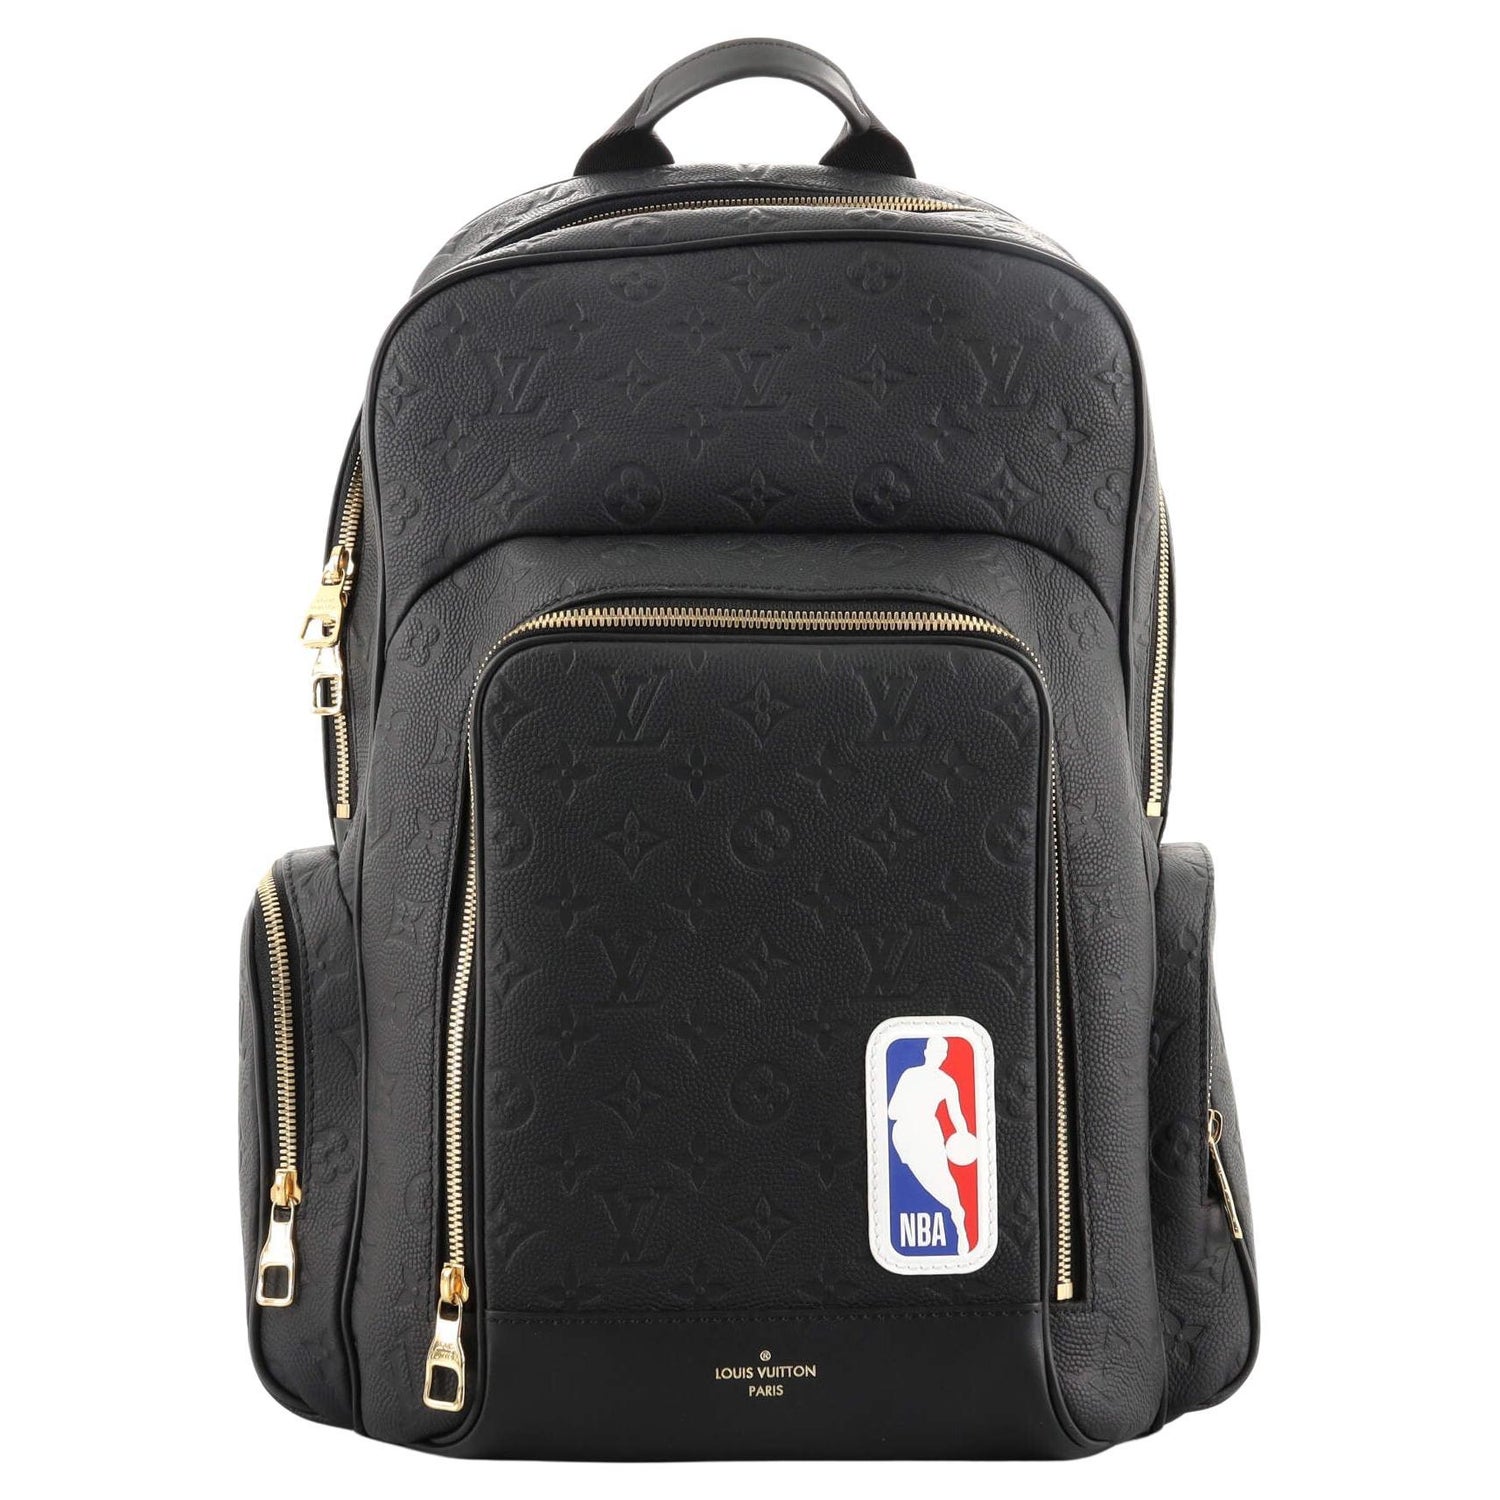 NBA joint L V shoulder bag fashion sports backpack Handbag sling Bag  shoulders bag Crossbody Bag